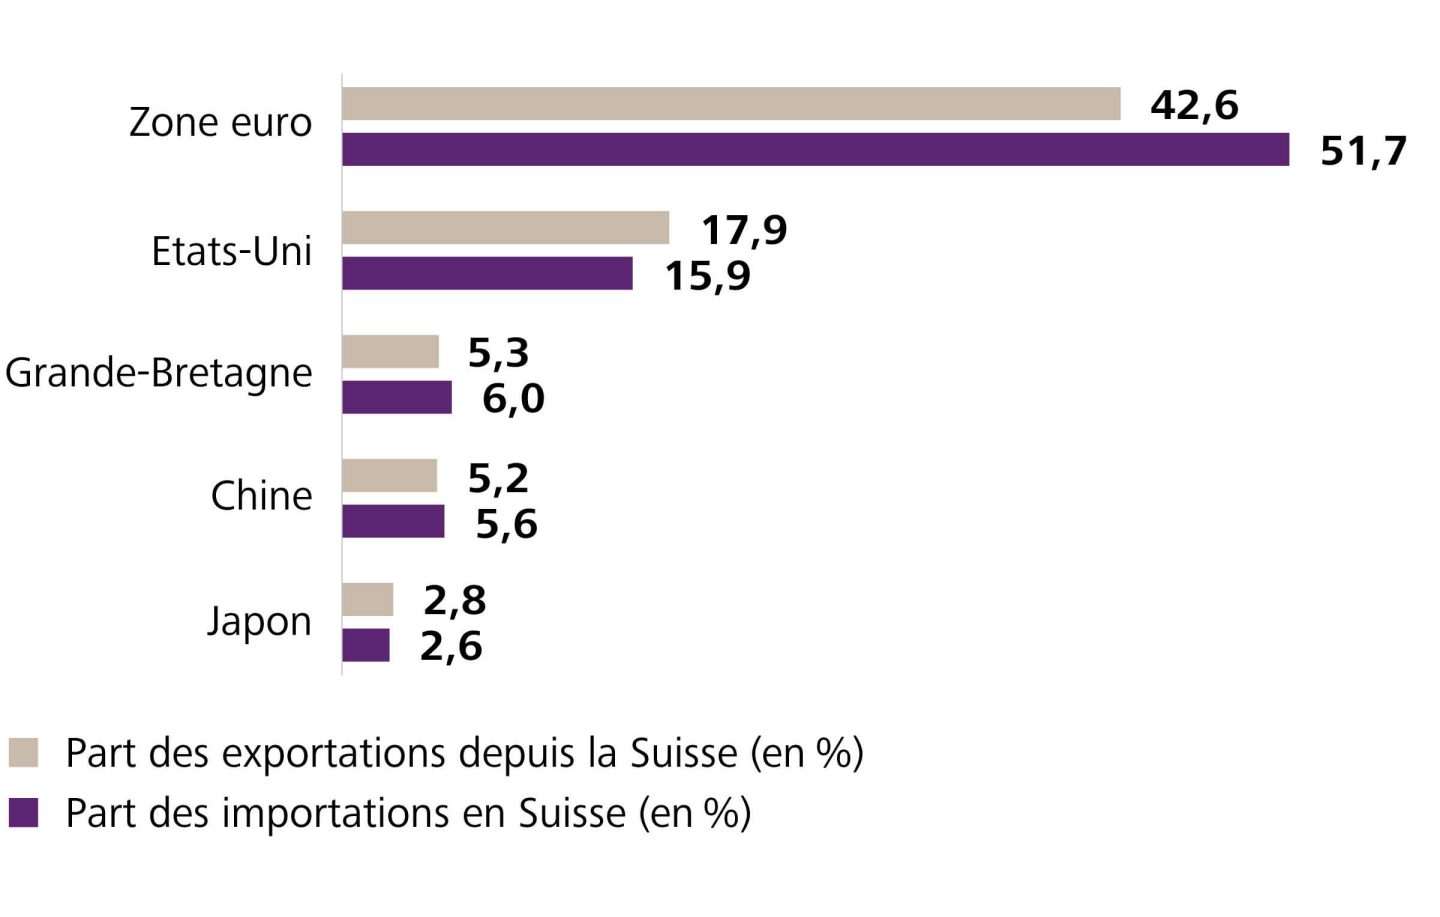 L'importance d'un pays (ou d'une zone monétaire) dans le volume total des échanges commerciaux de la Suisse